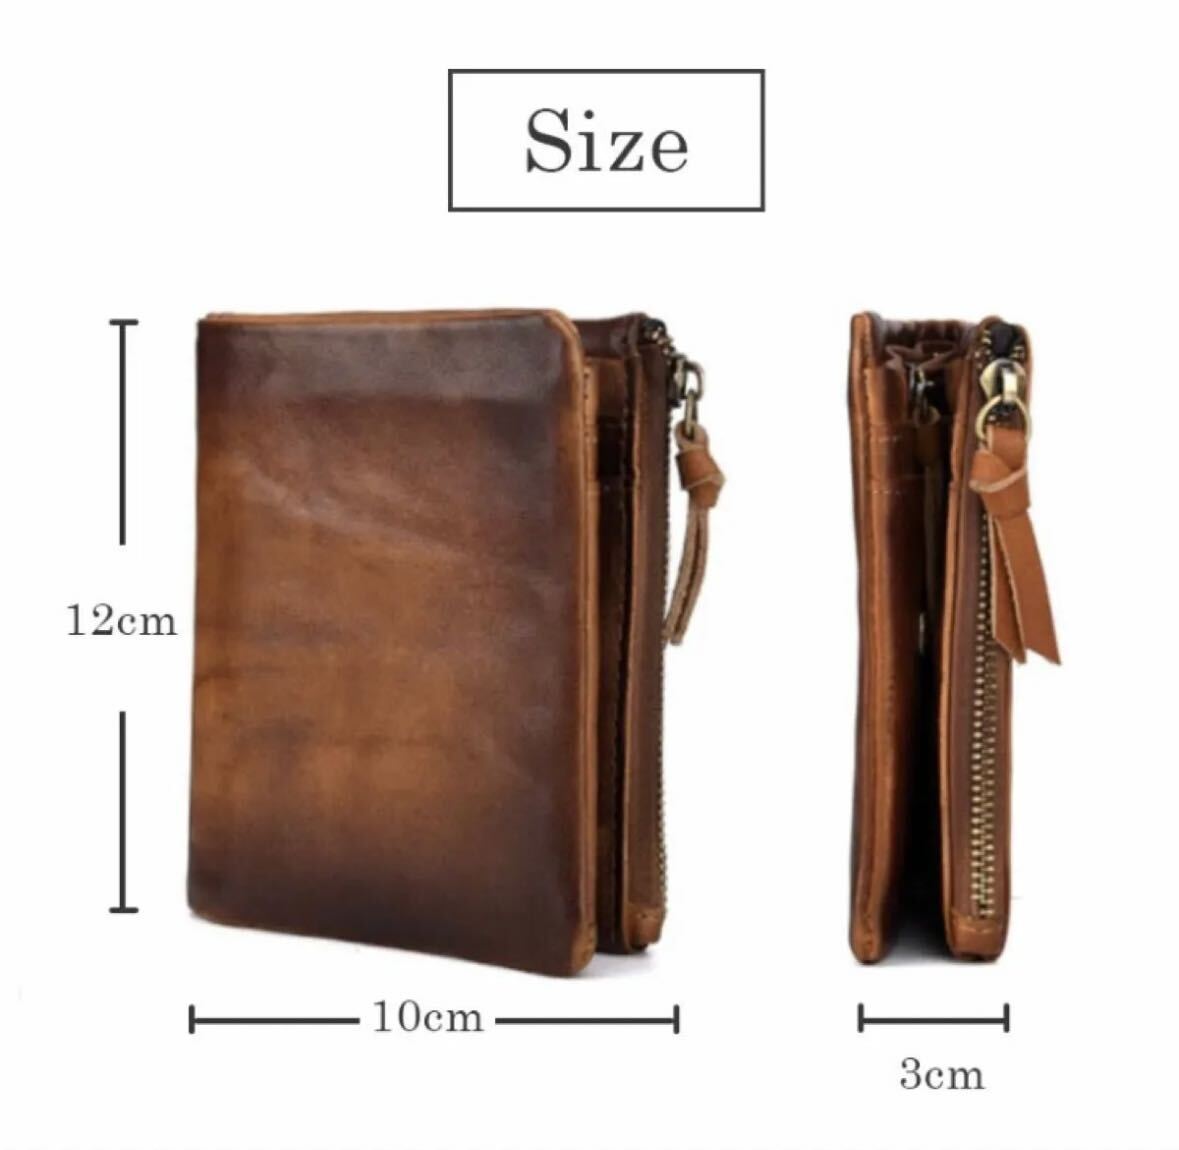  Mini кошелек новый товар мужской кошелек складывающийся пополам натуральная кожа телячья кожа подарок orange Brown 